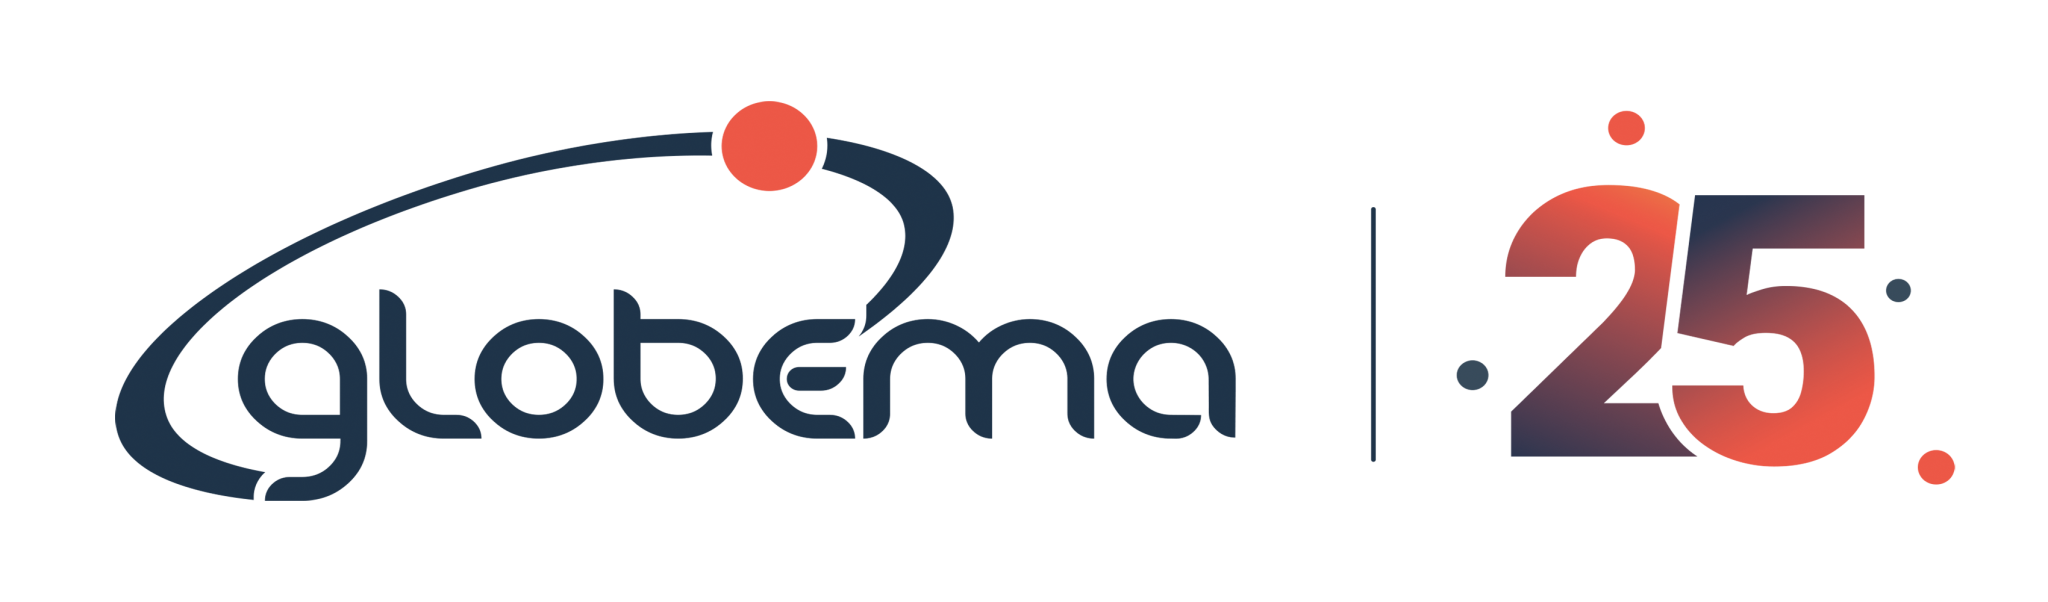 globema-25-logo